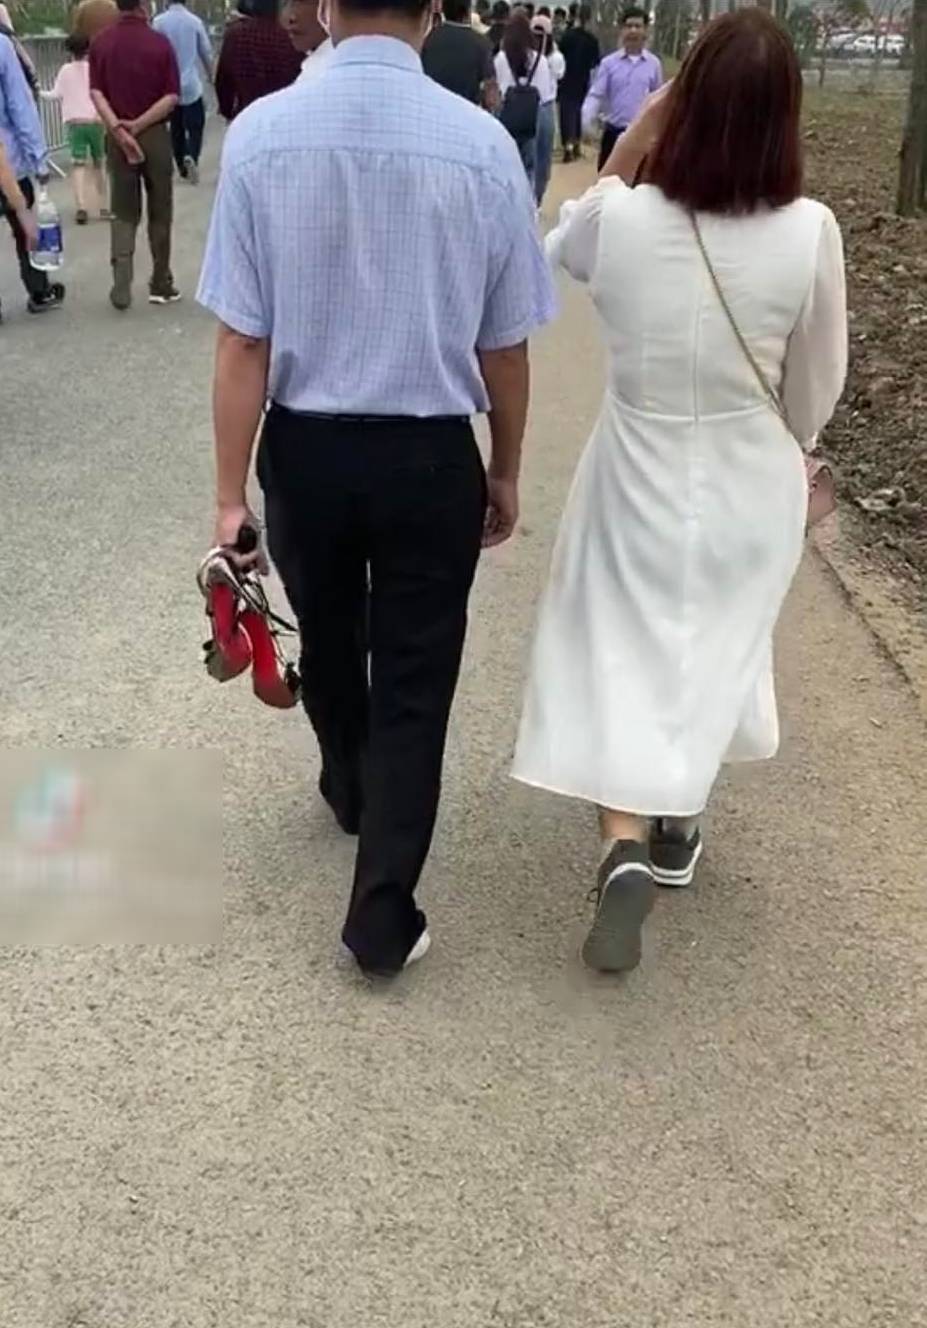  Người đàn ông đi chân không, đeo tất, tay thì xách giày cao gót và để cho vợ đi giày của mình. (Ảnh cắt từ clip)